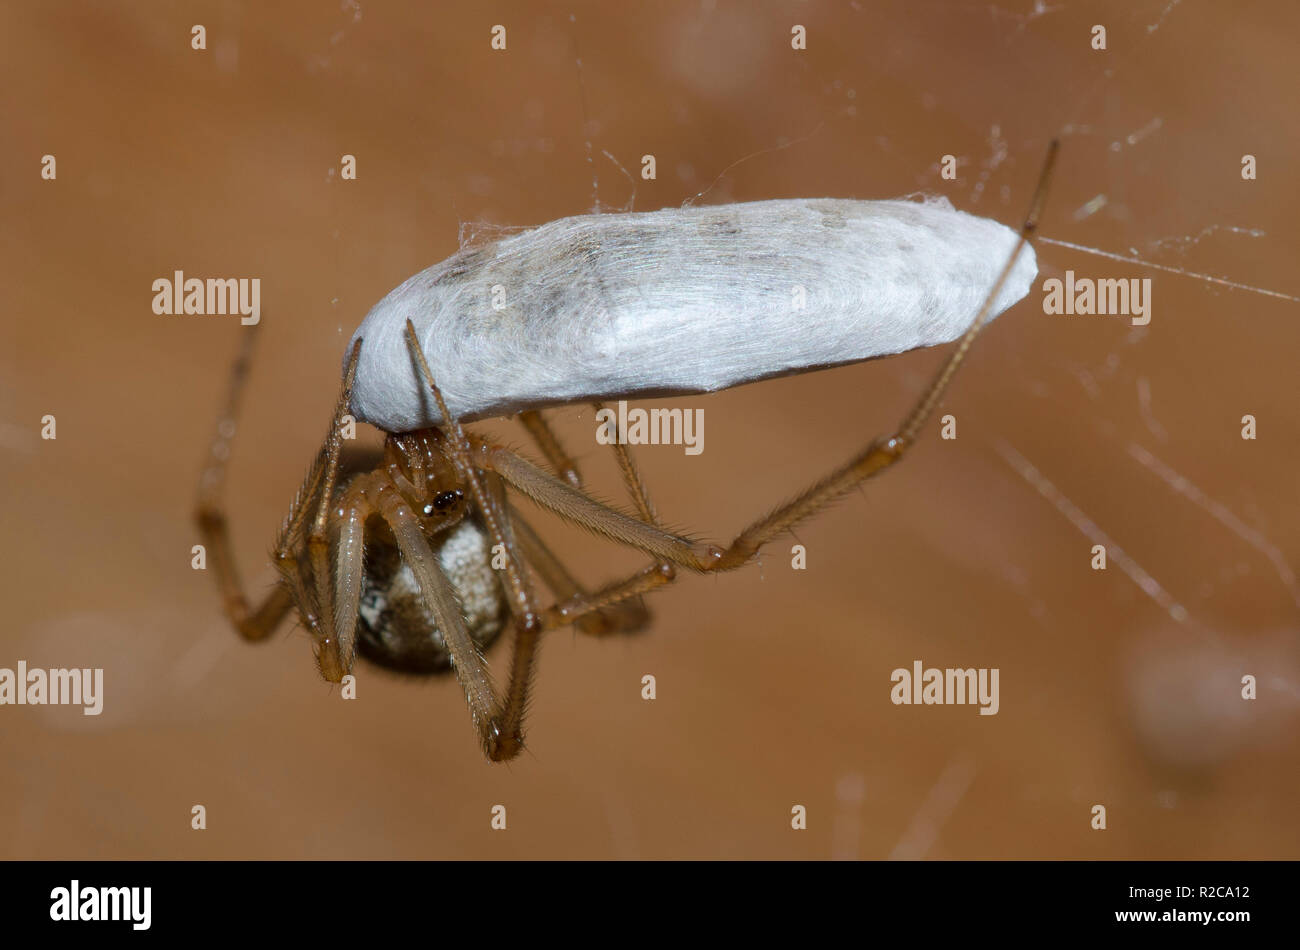 Common House Spider, Parasteatoda tepidariorum, female feeding on silk-wrapped prey Stock Photo